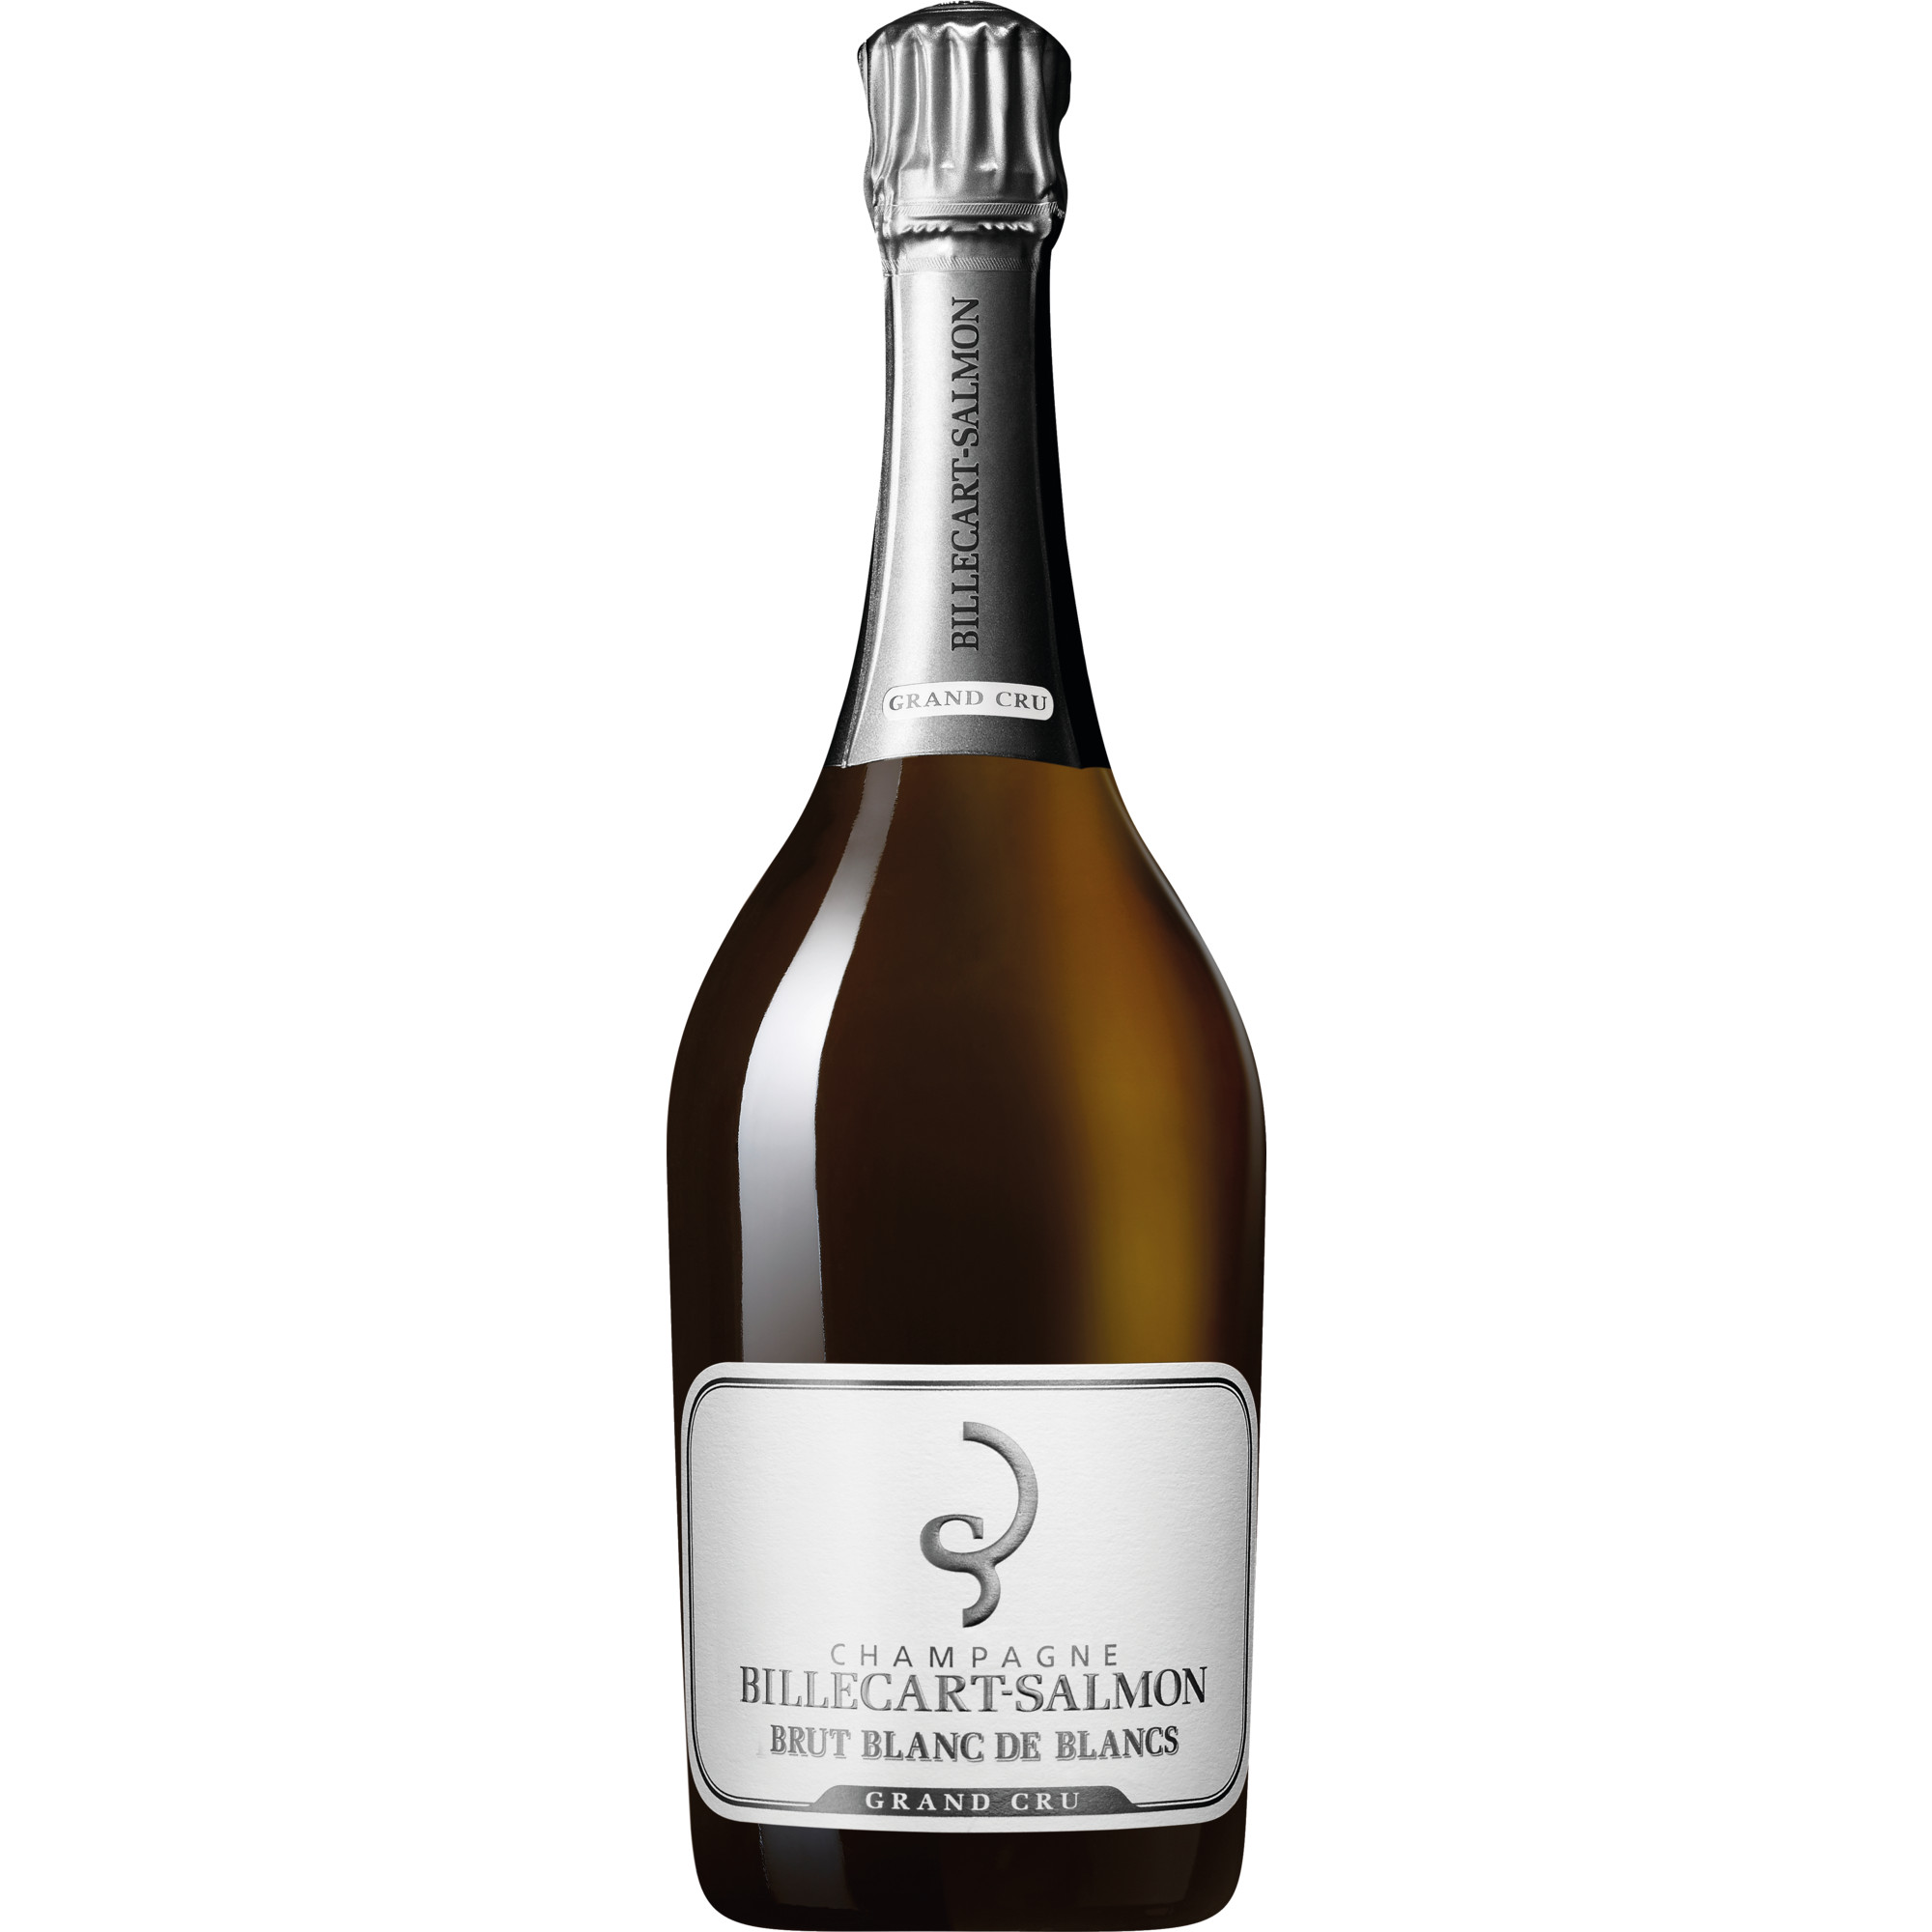 Champagne Billecart-Salmon Grand Cru, Brut, Blanc de Blancs, Champagne AC, Champagne, Schaumwein